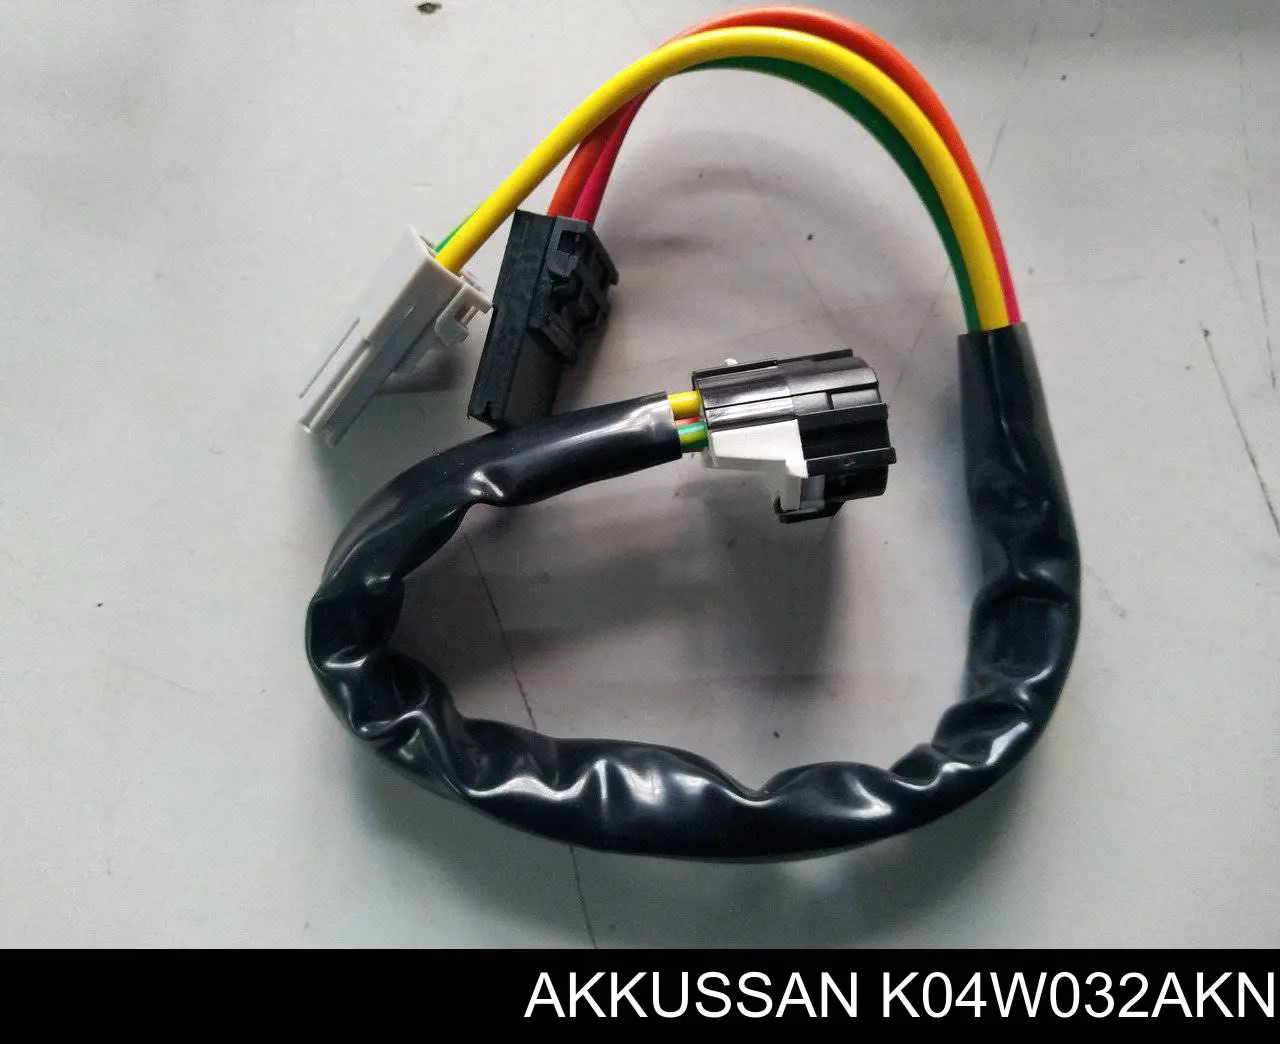 K04W032AKN Akkussan interruptor de encendido / arranque